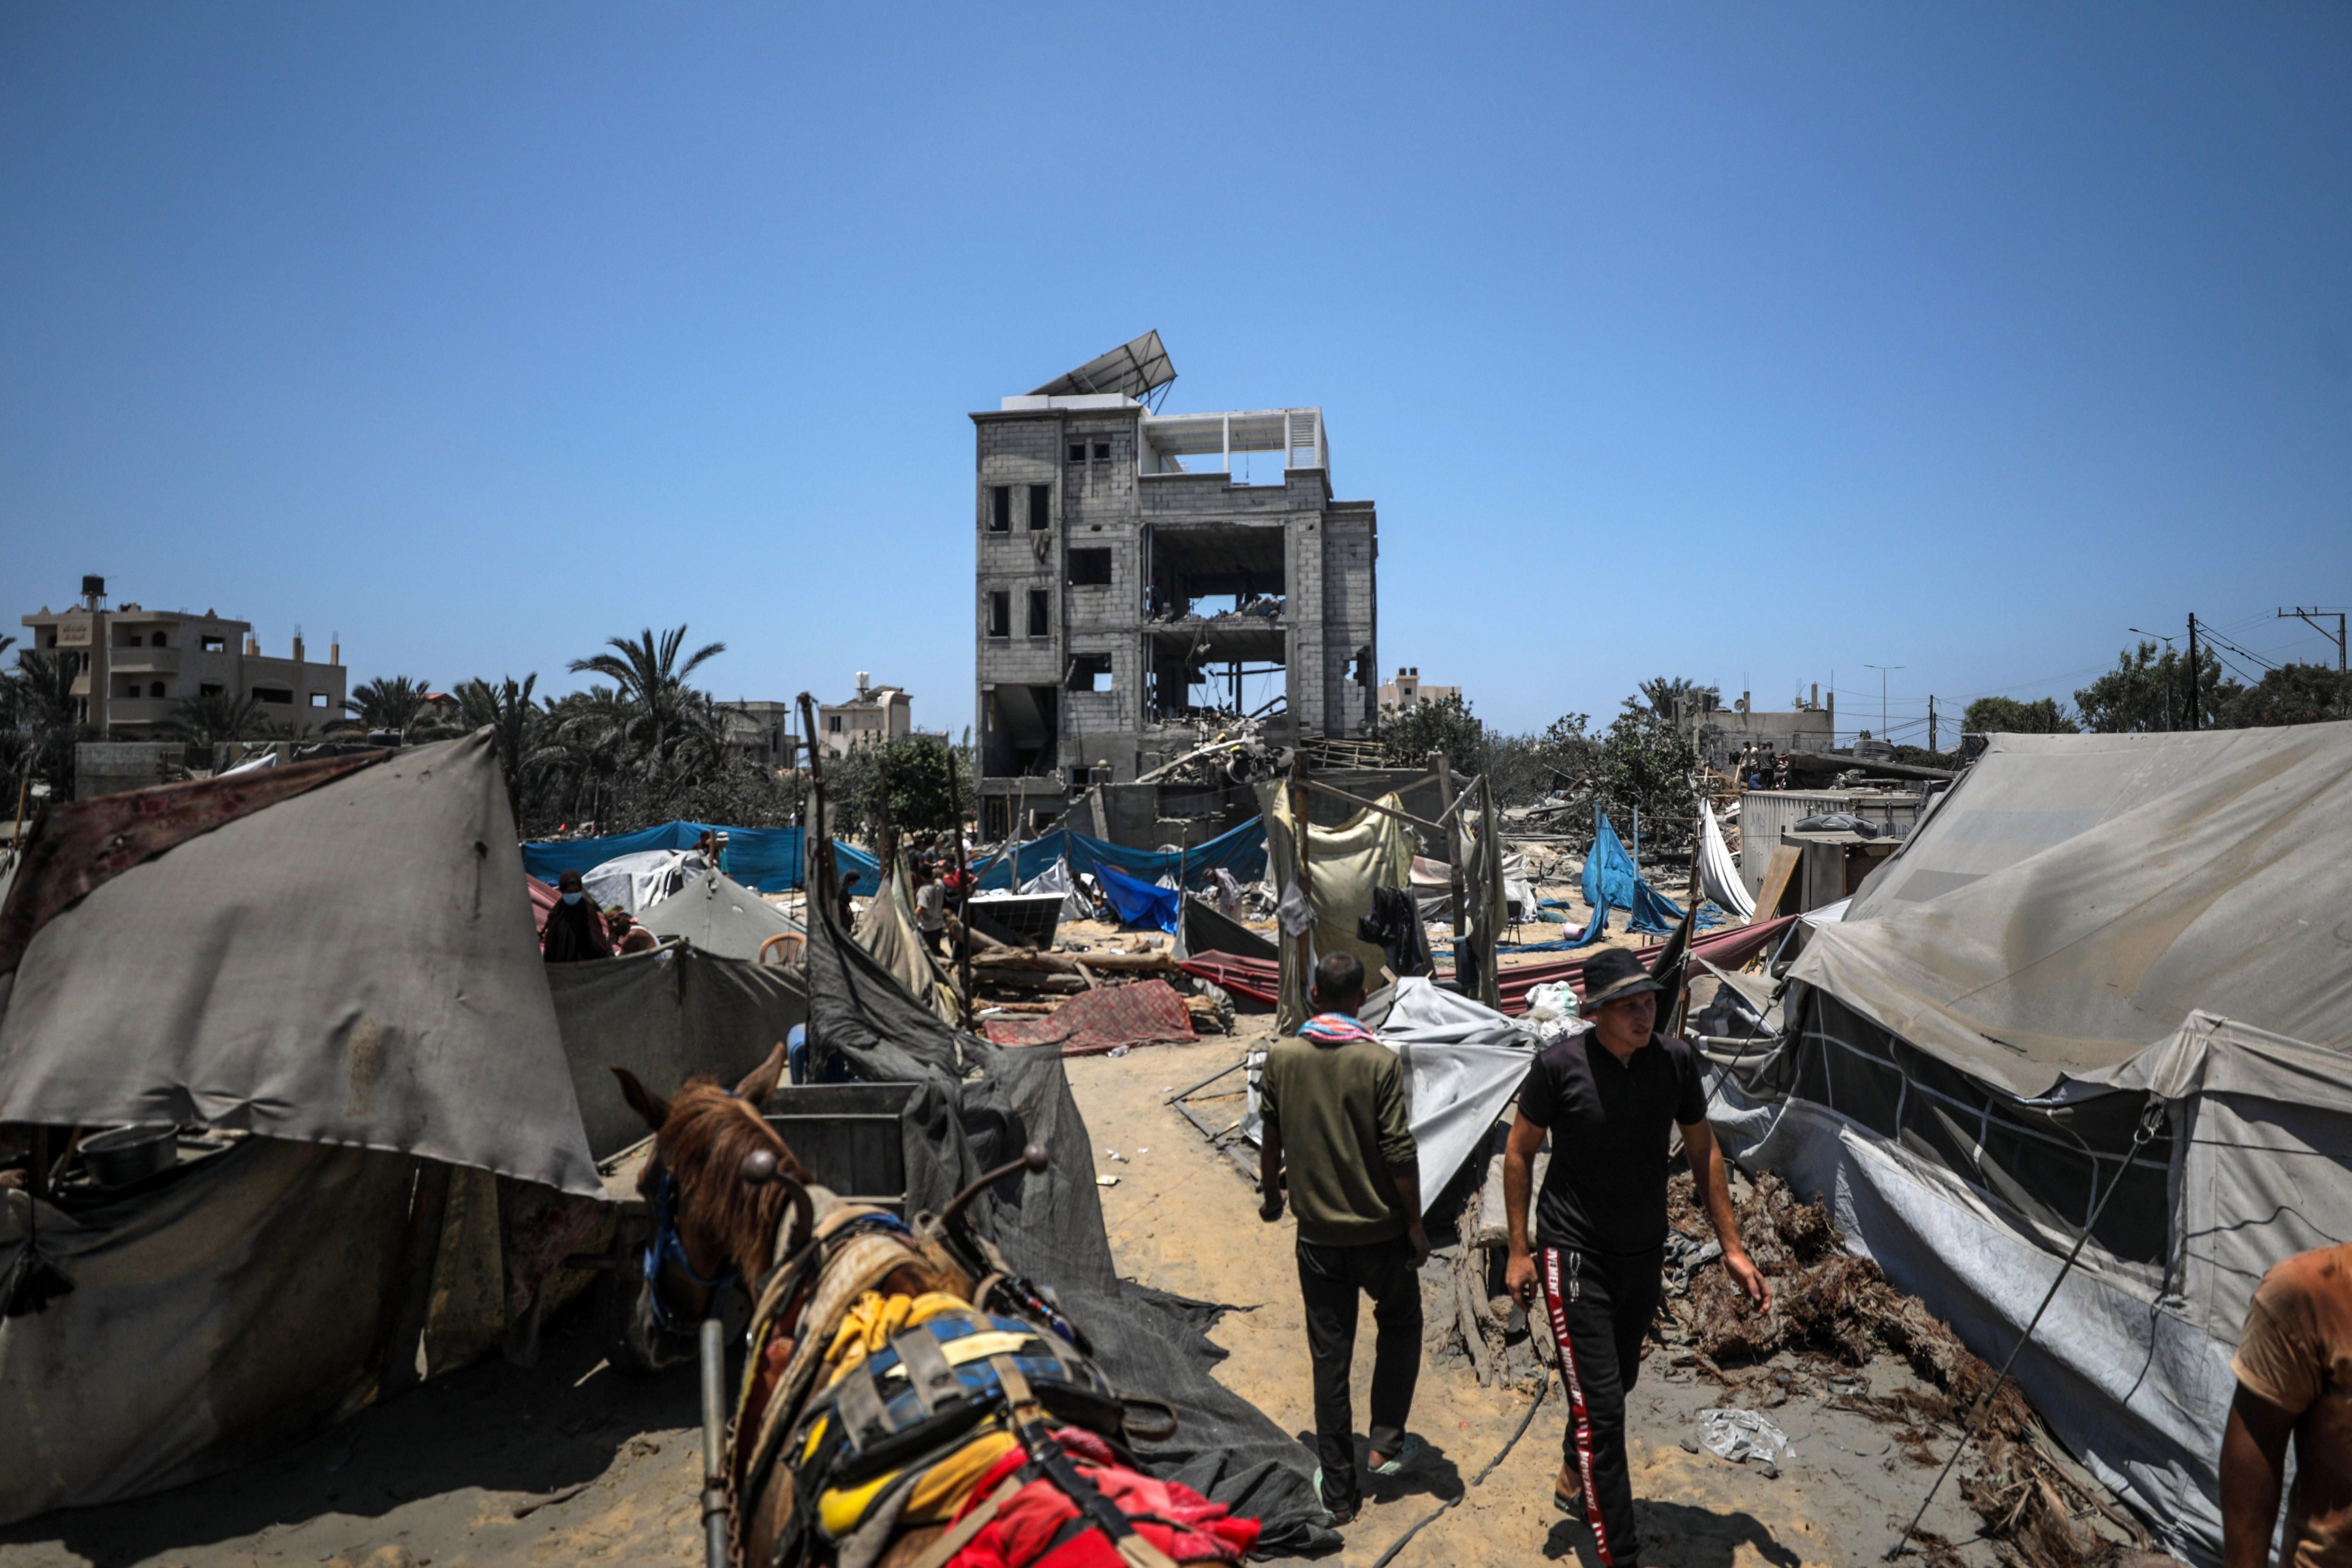 Mawasiko (Gaza) barne desplazatuen esparru bat, uztailaren 13an. MOHAMMED SABER / EFE